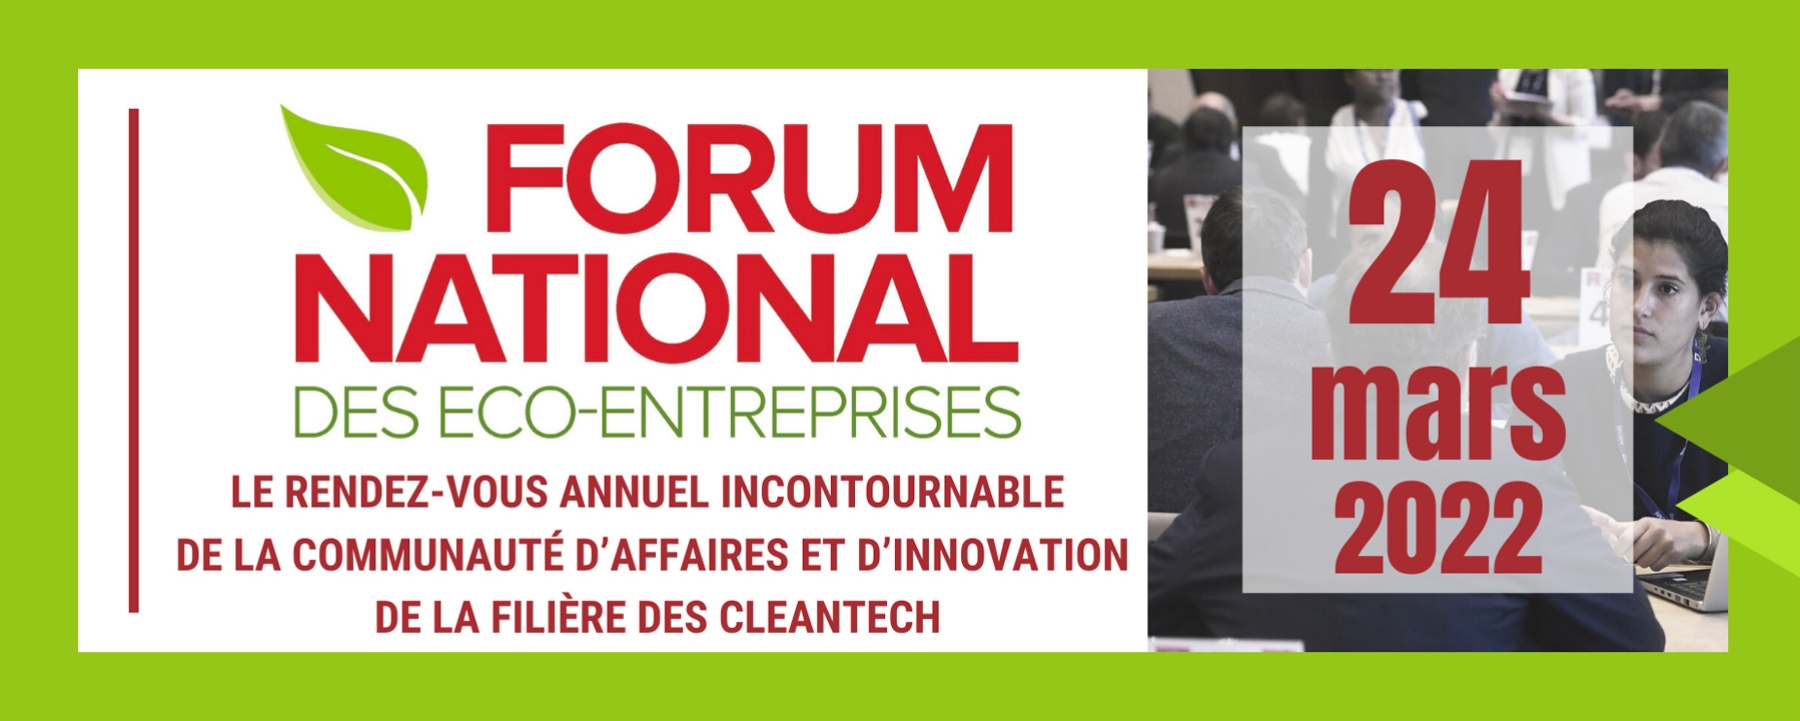 Forum National des eco-entreprises 2022